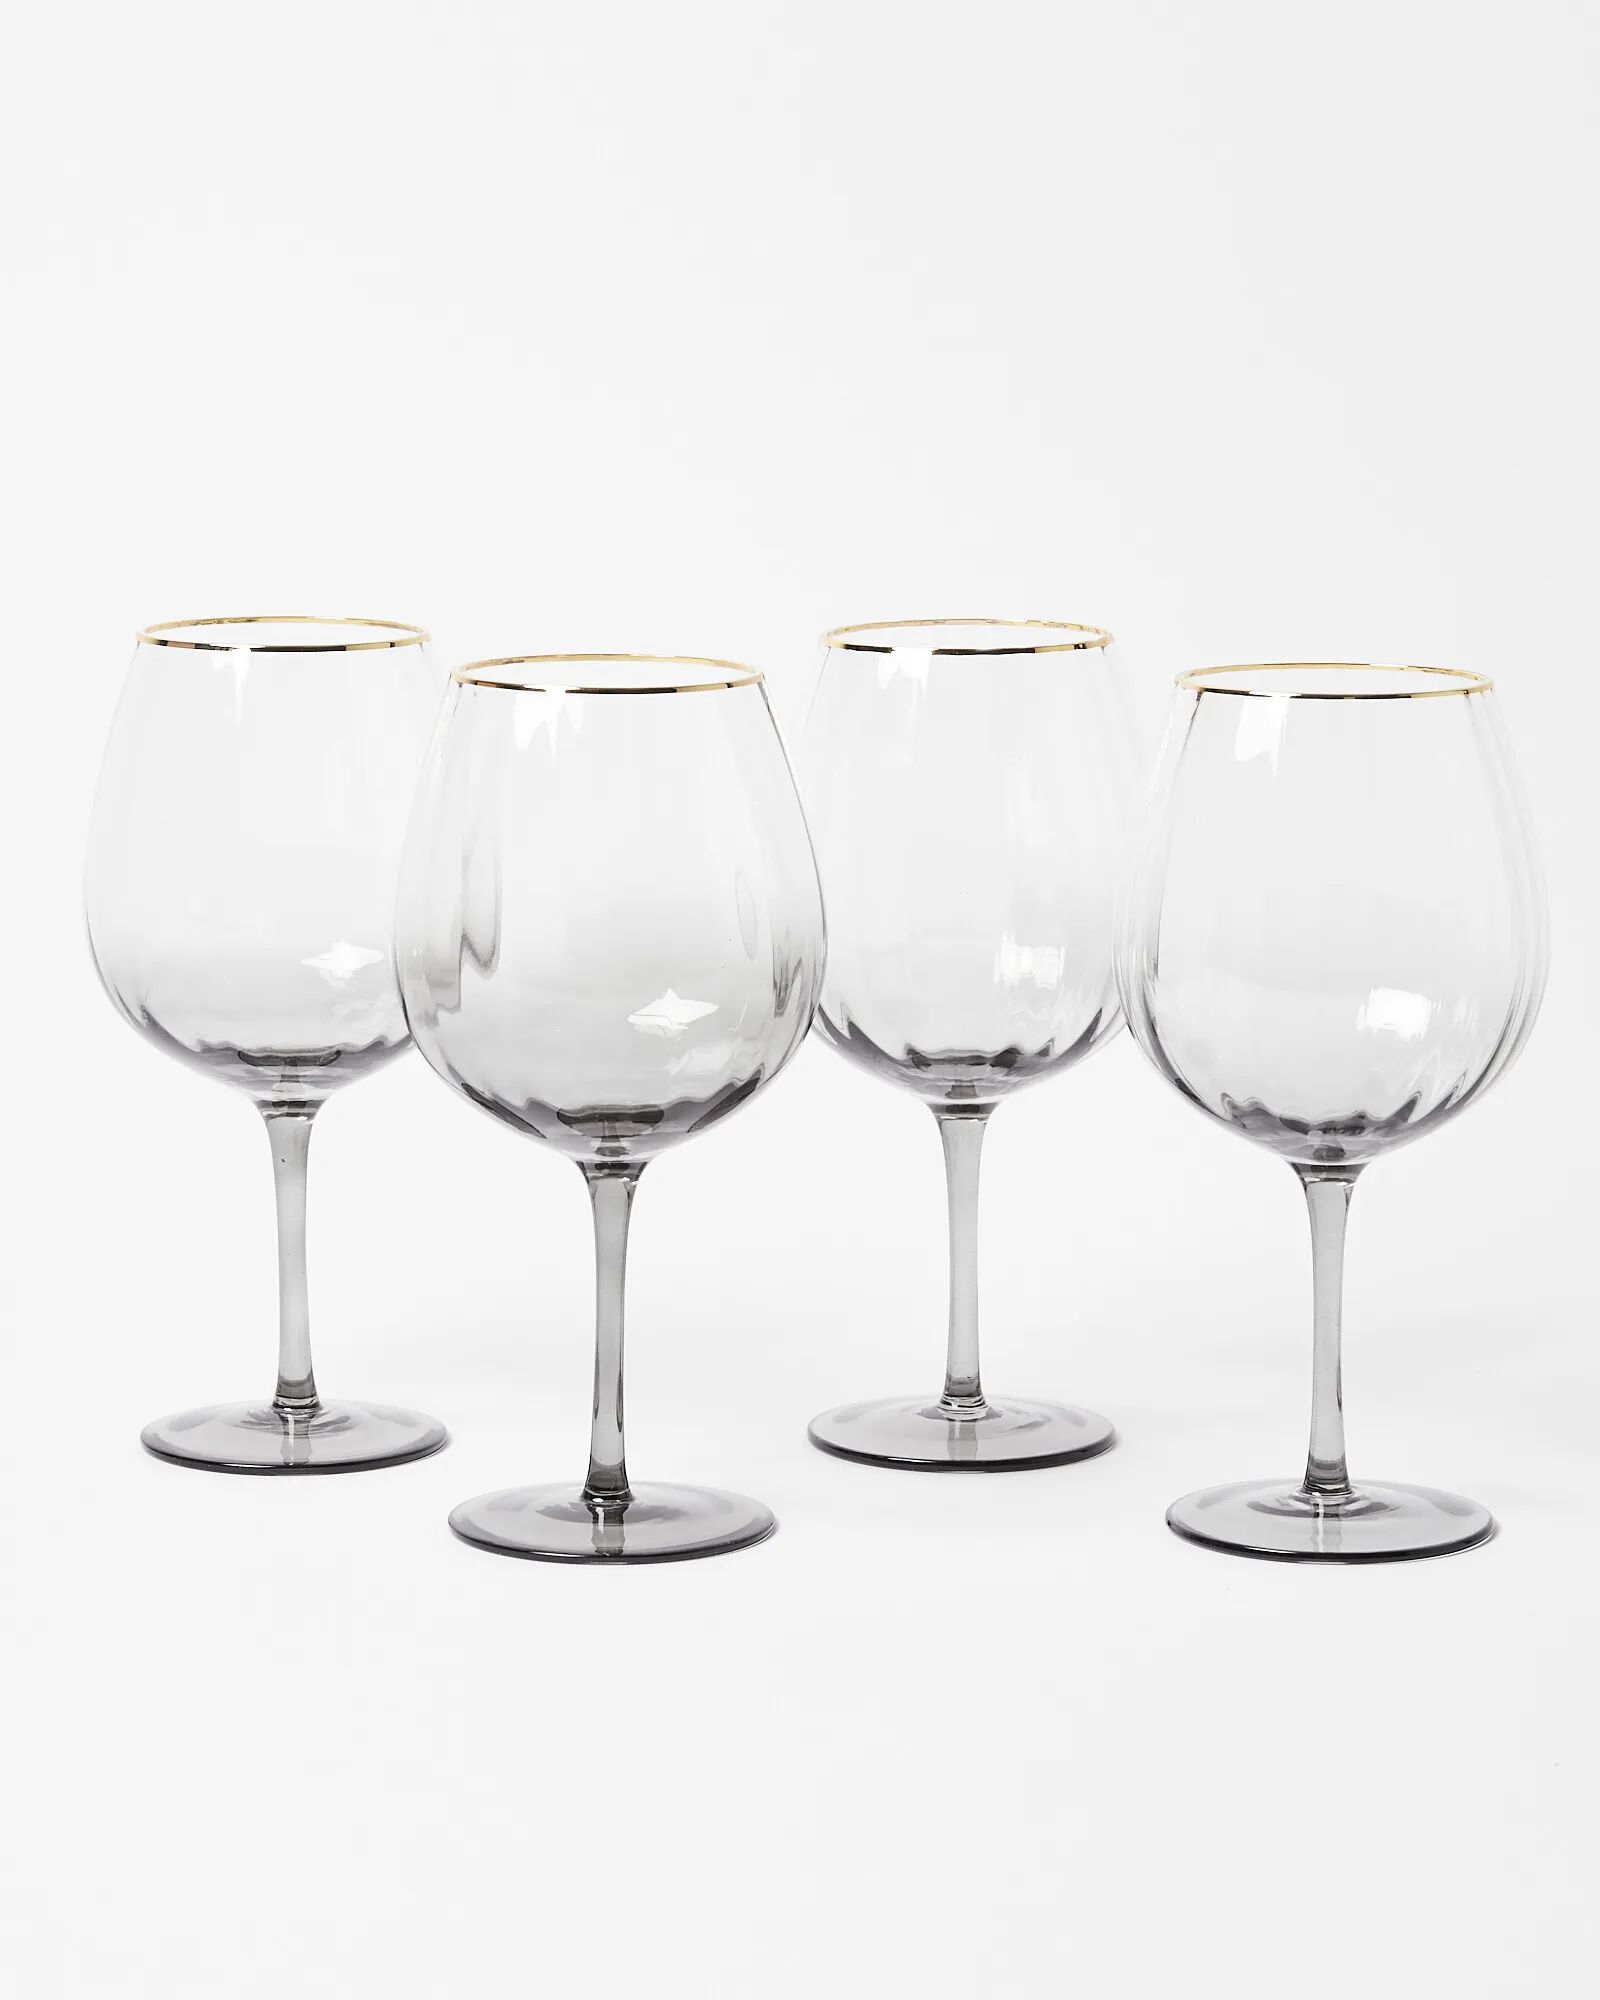 Claro Grey Wine Glasses Set of Four | Oliver Bonas | Oliver Bonas (Global)